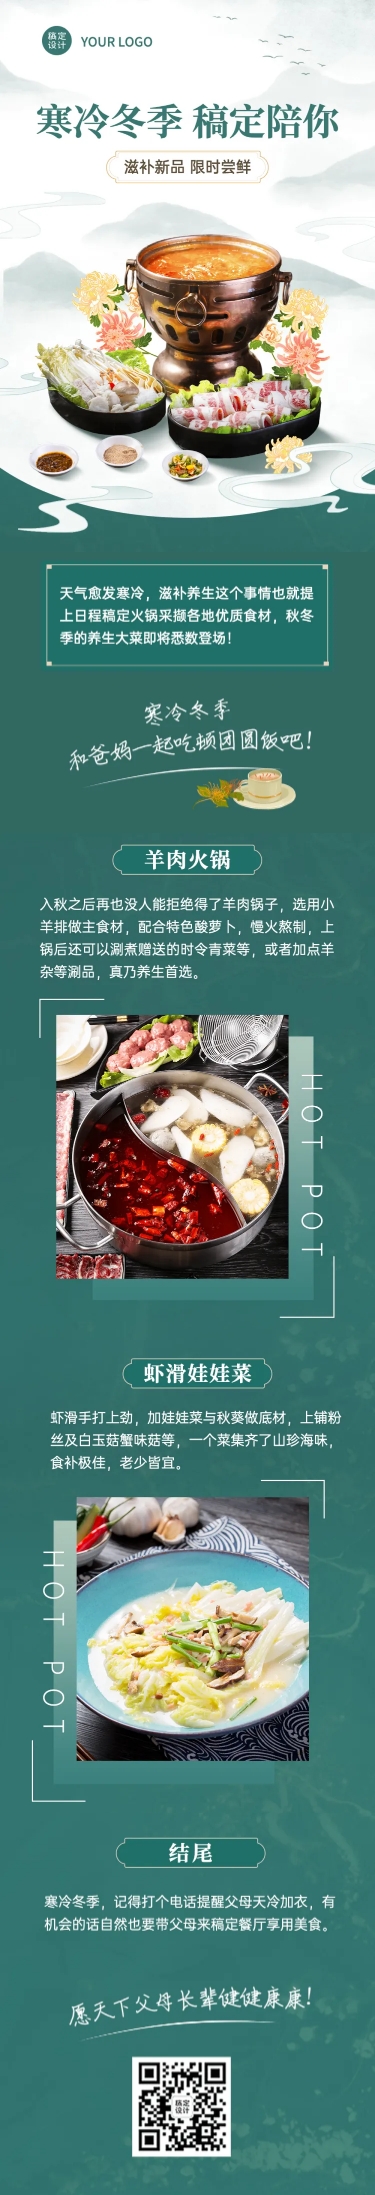 餐饮美食重阳节节日营销实景文章长图预览效果